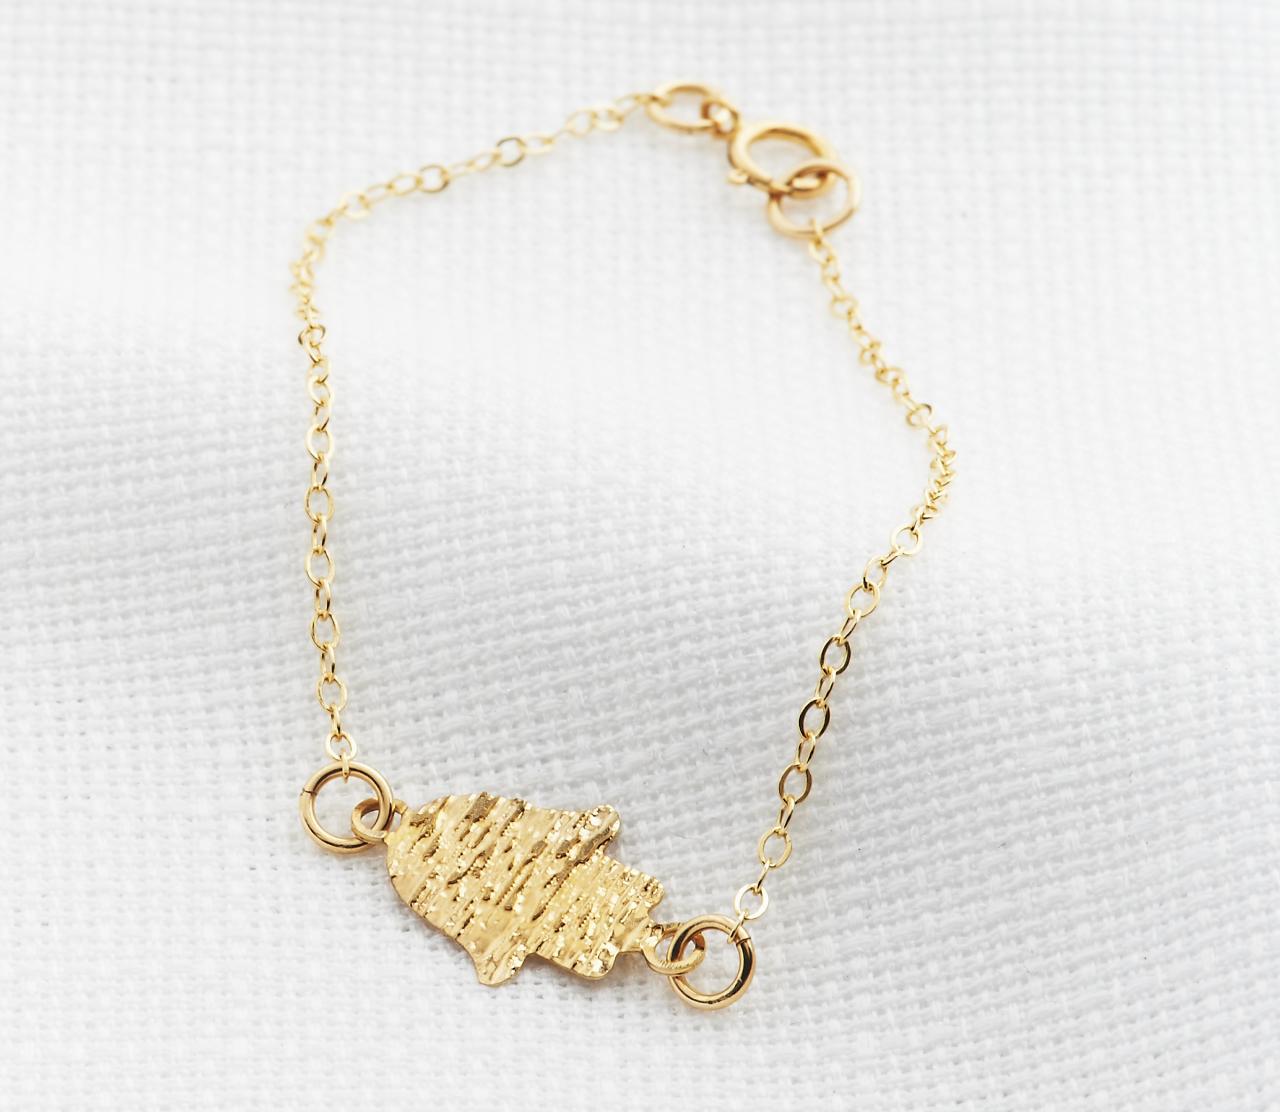 Gold Hand Bracelet - Gold Hamsa Bracelet, Dainty Gold Bracelet, Gold Sideways Hamsa Bracelet, Good Luck, Faith Jewelry, Gold Jewelry